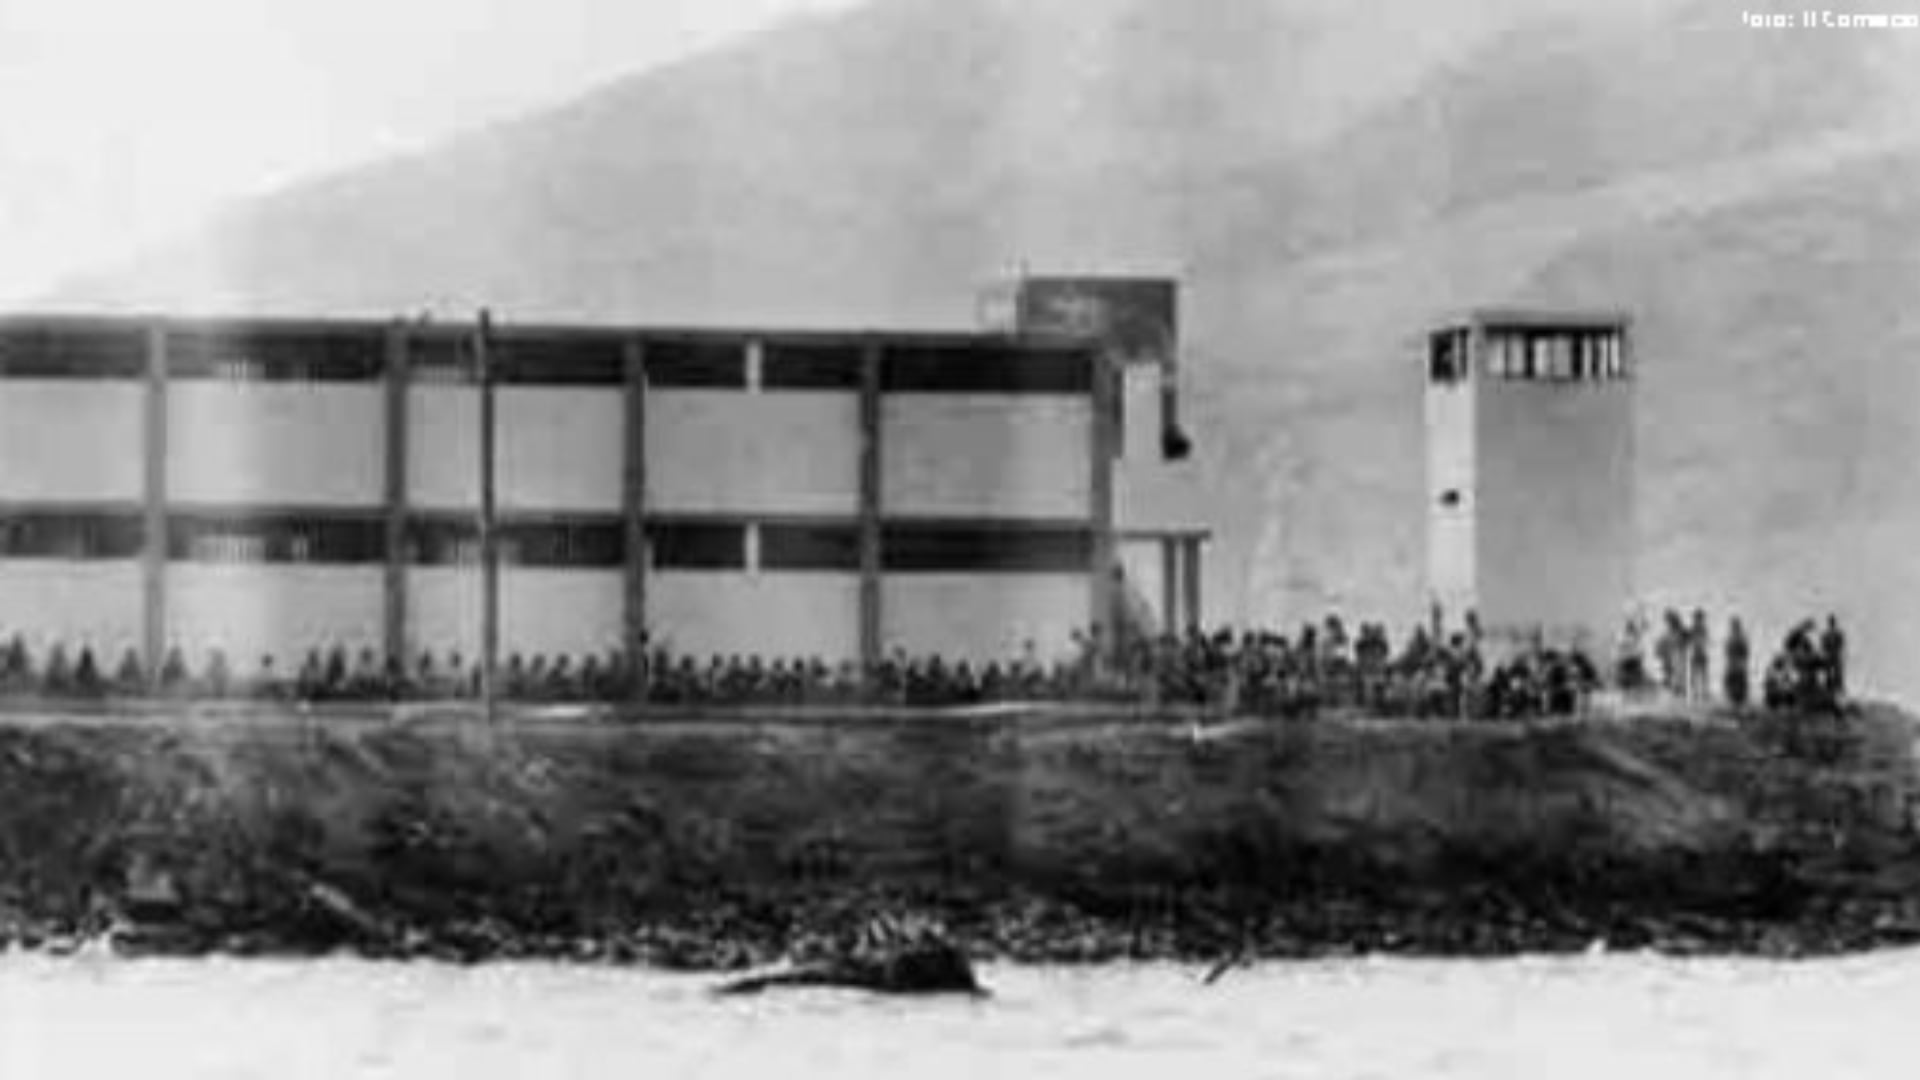 El Frontón fue una cárcel donde estaban recluidos delincuentes peligrosos desde 1917